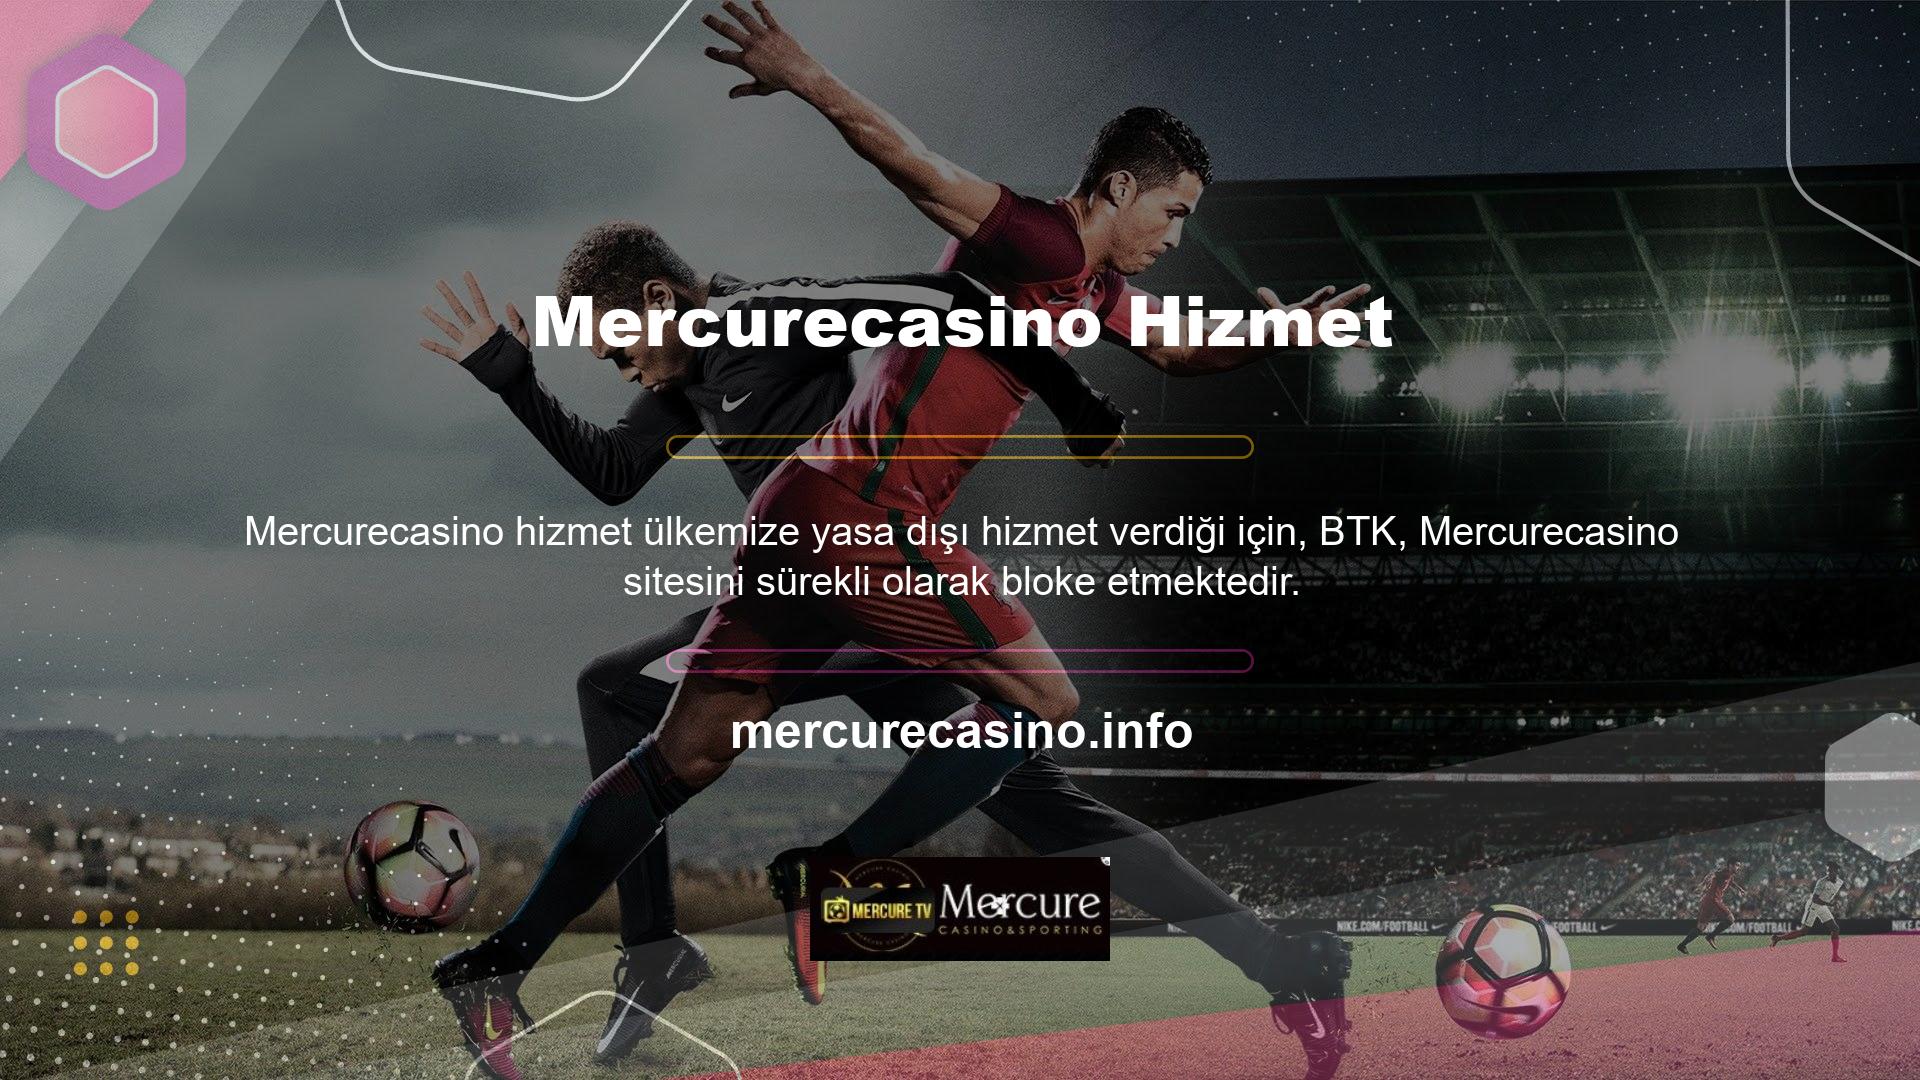 Engellenmesine rağmen Mercurecasino sitesi yeni bir alan adı adresi olarak kullanıcıların erişimine açıktır